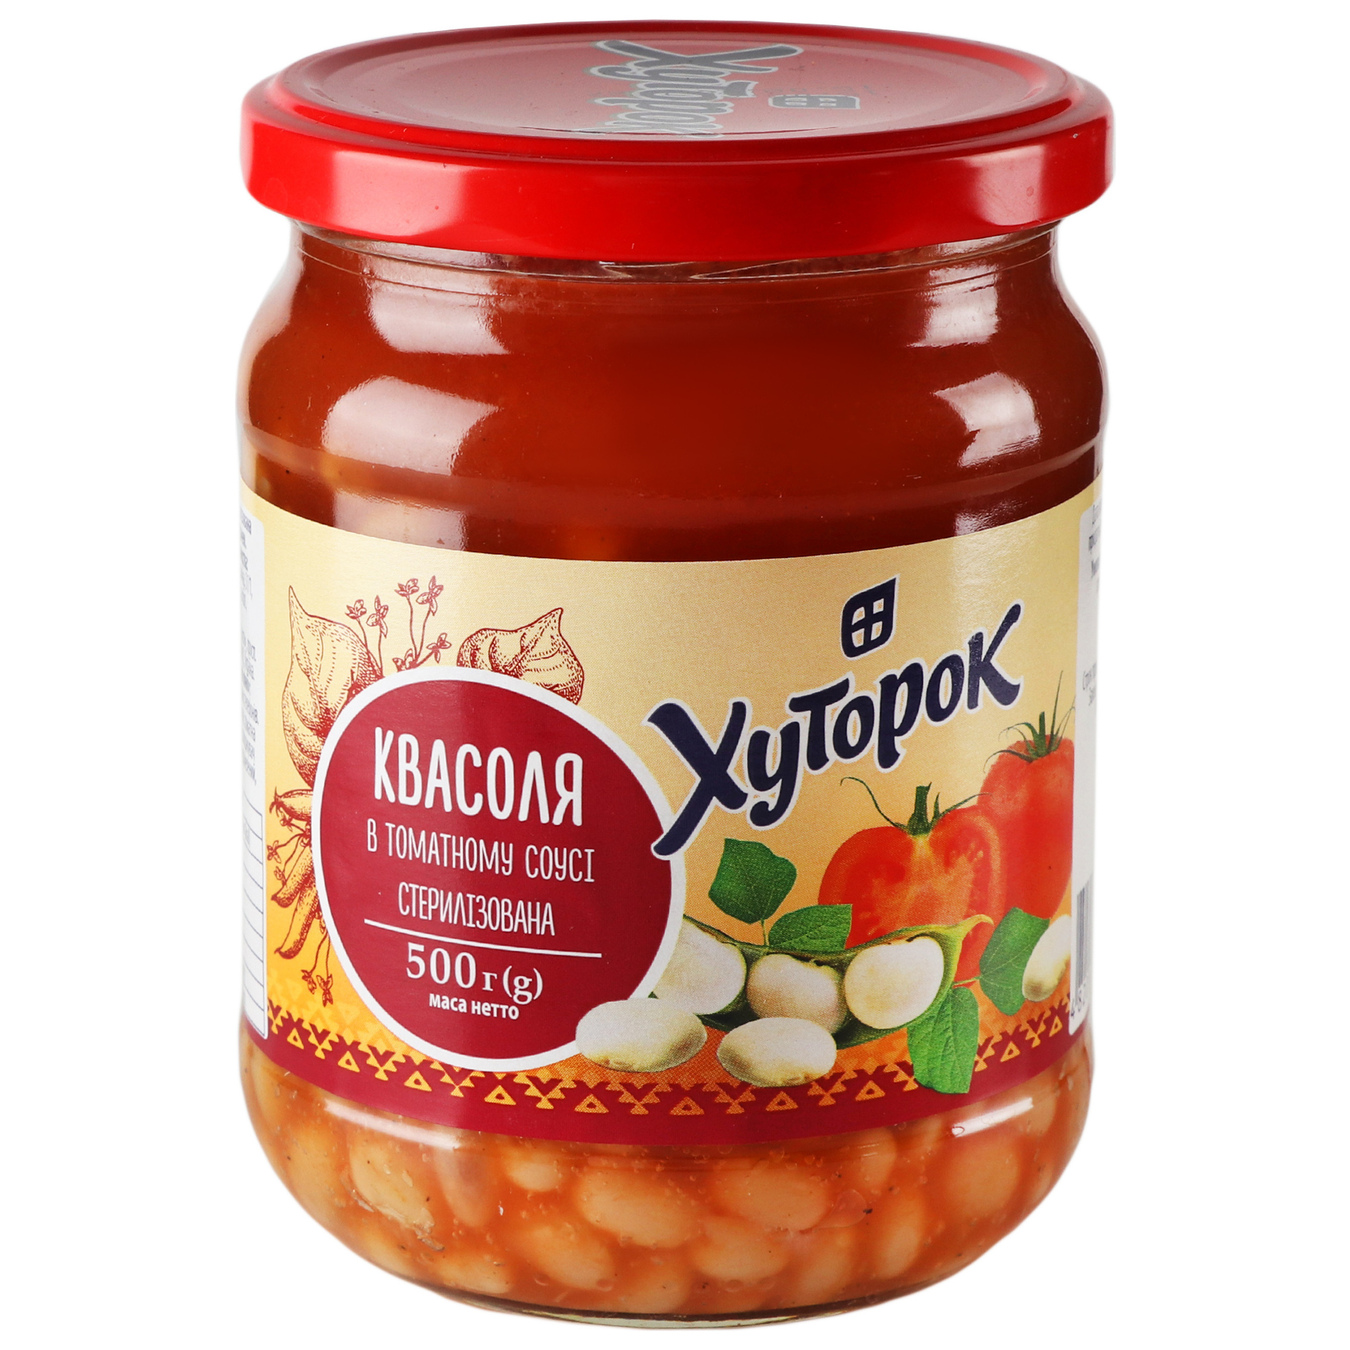 Khutorok beans in tomato sauce 500g 2